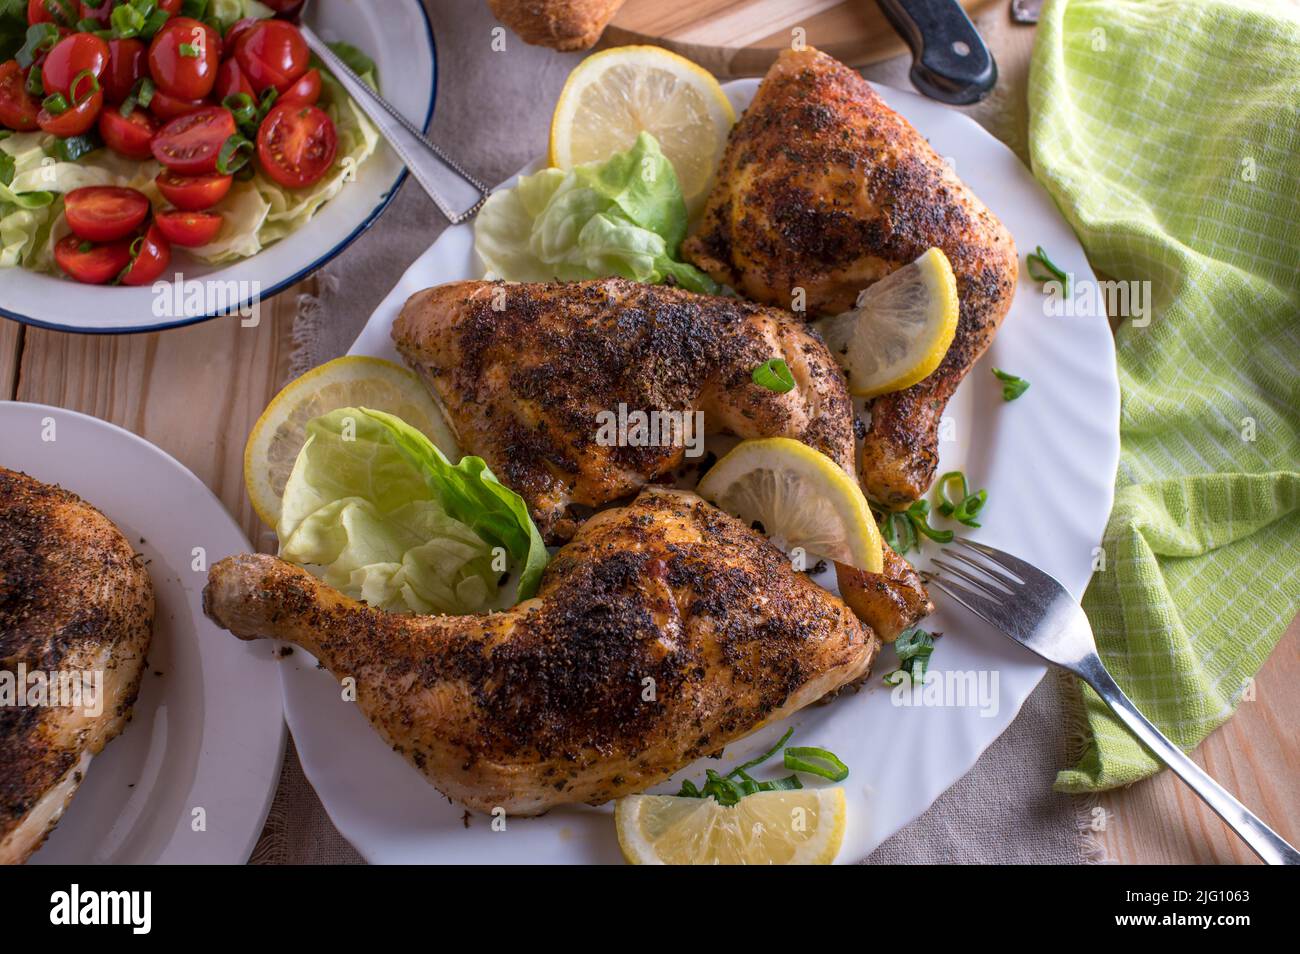 Cosce di pollo al forno con insalata su un tavolo. Cibo sano piatto di famiglia Foto Stock